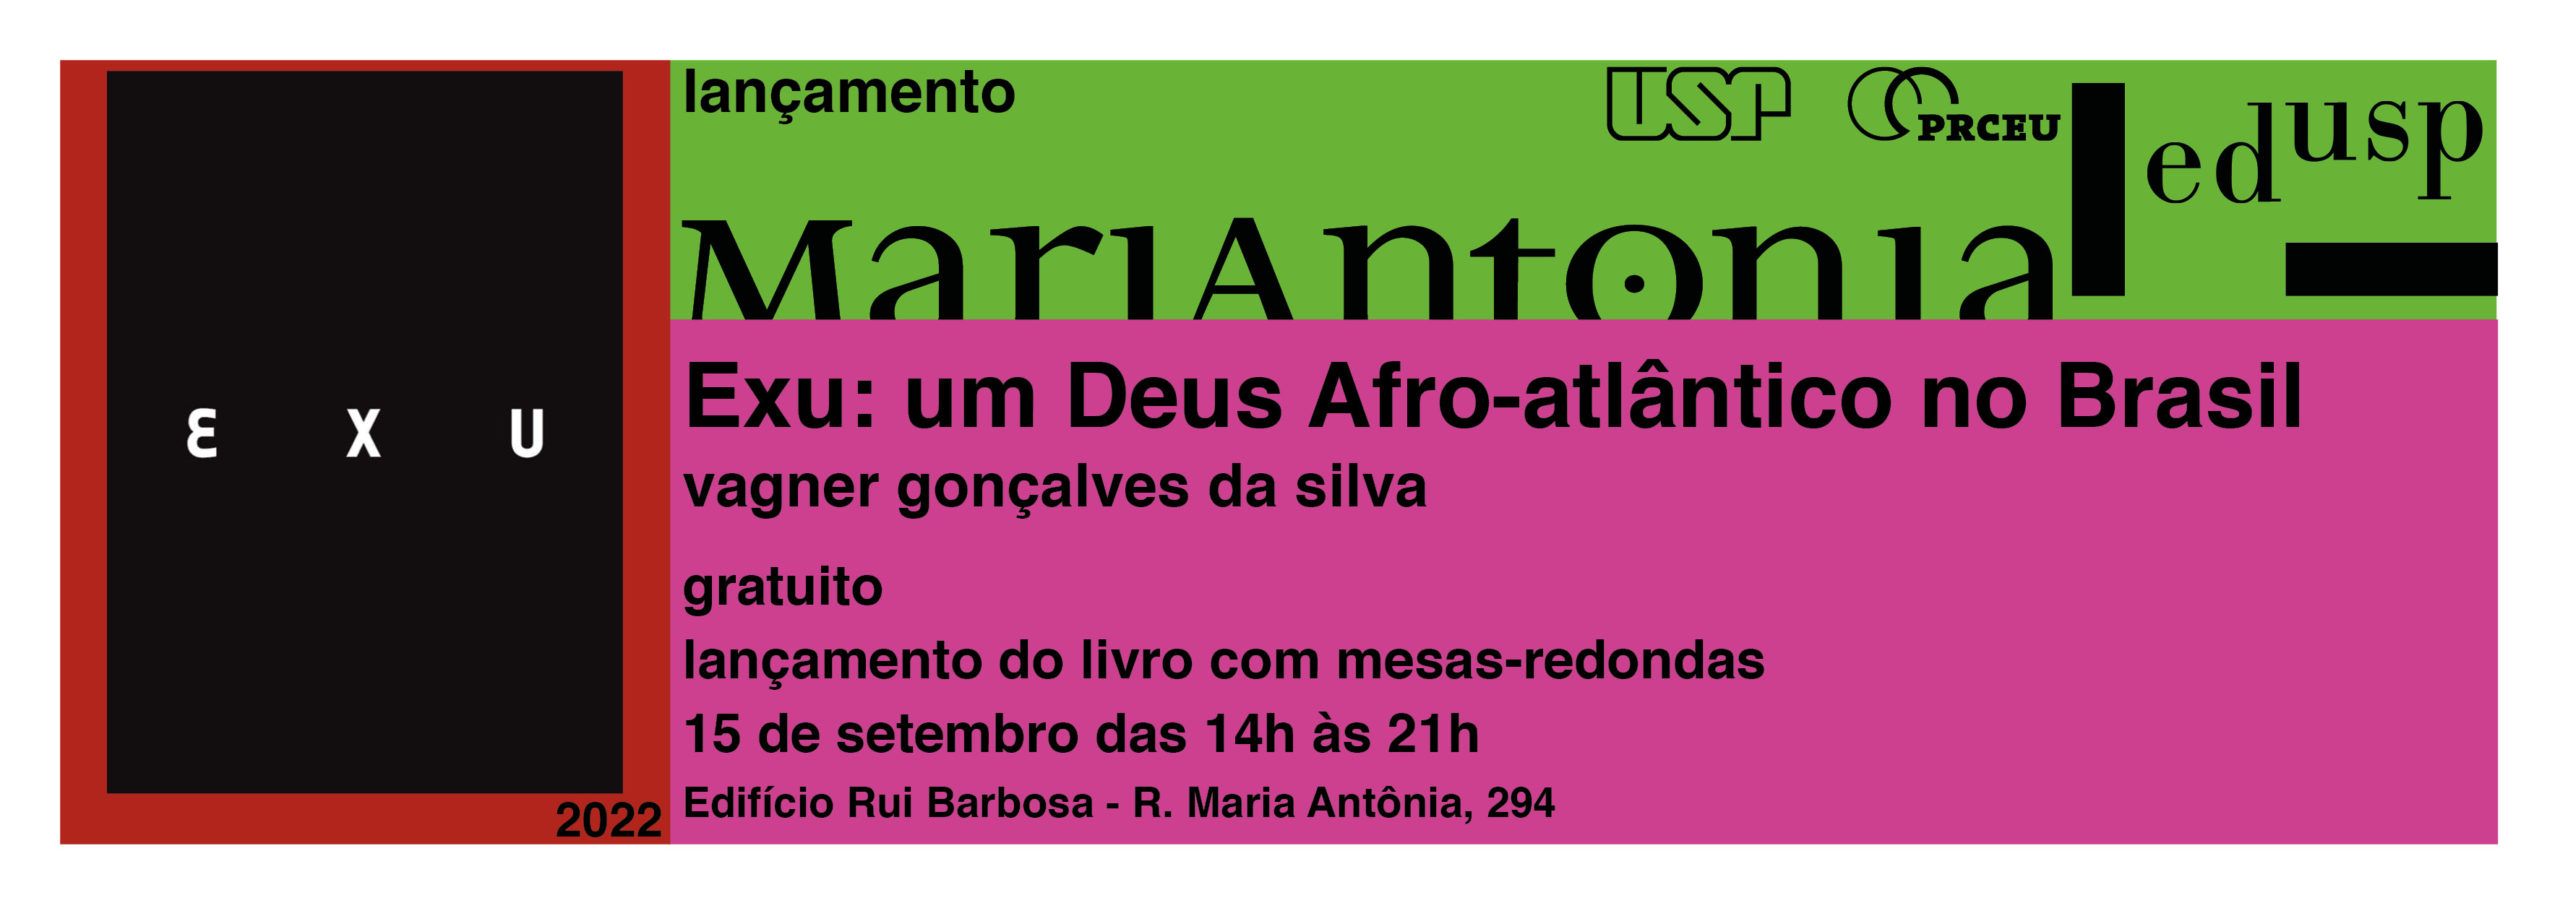 (Português) Lançamento do livro “Exu: um deus afro-atlântico no Brasil”